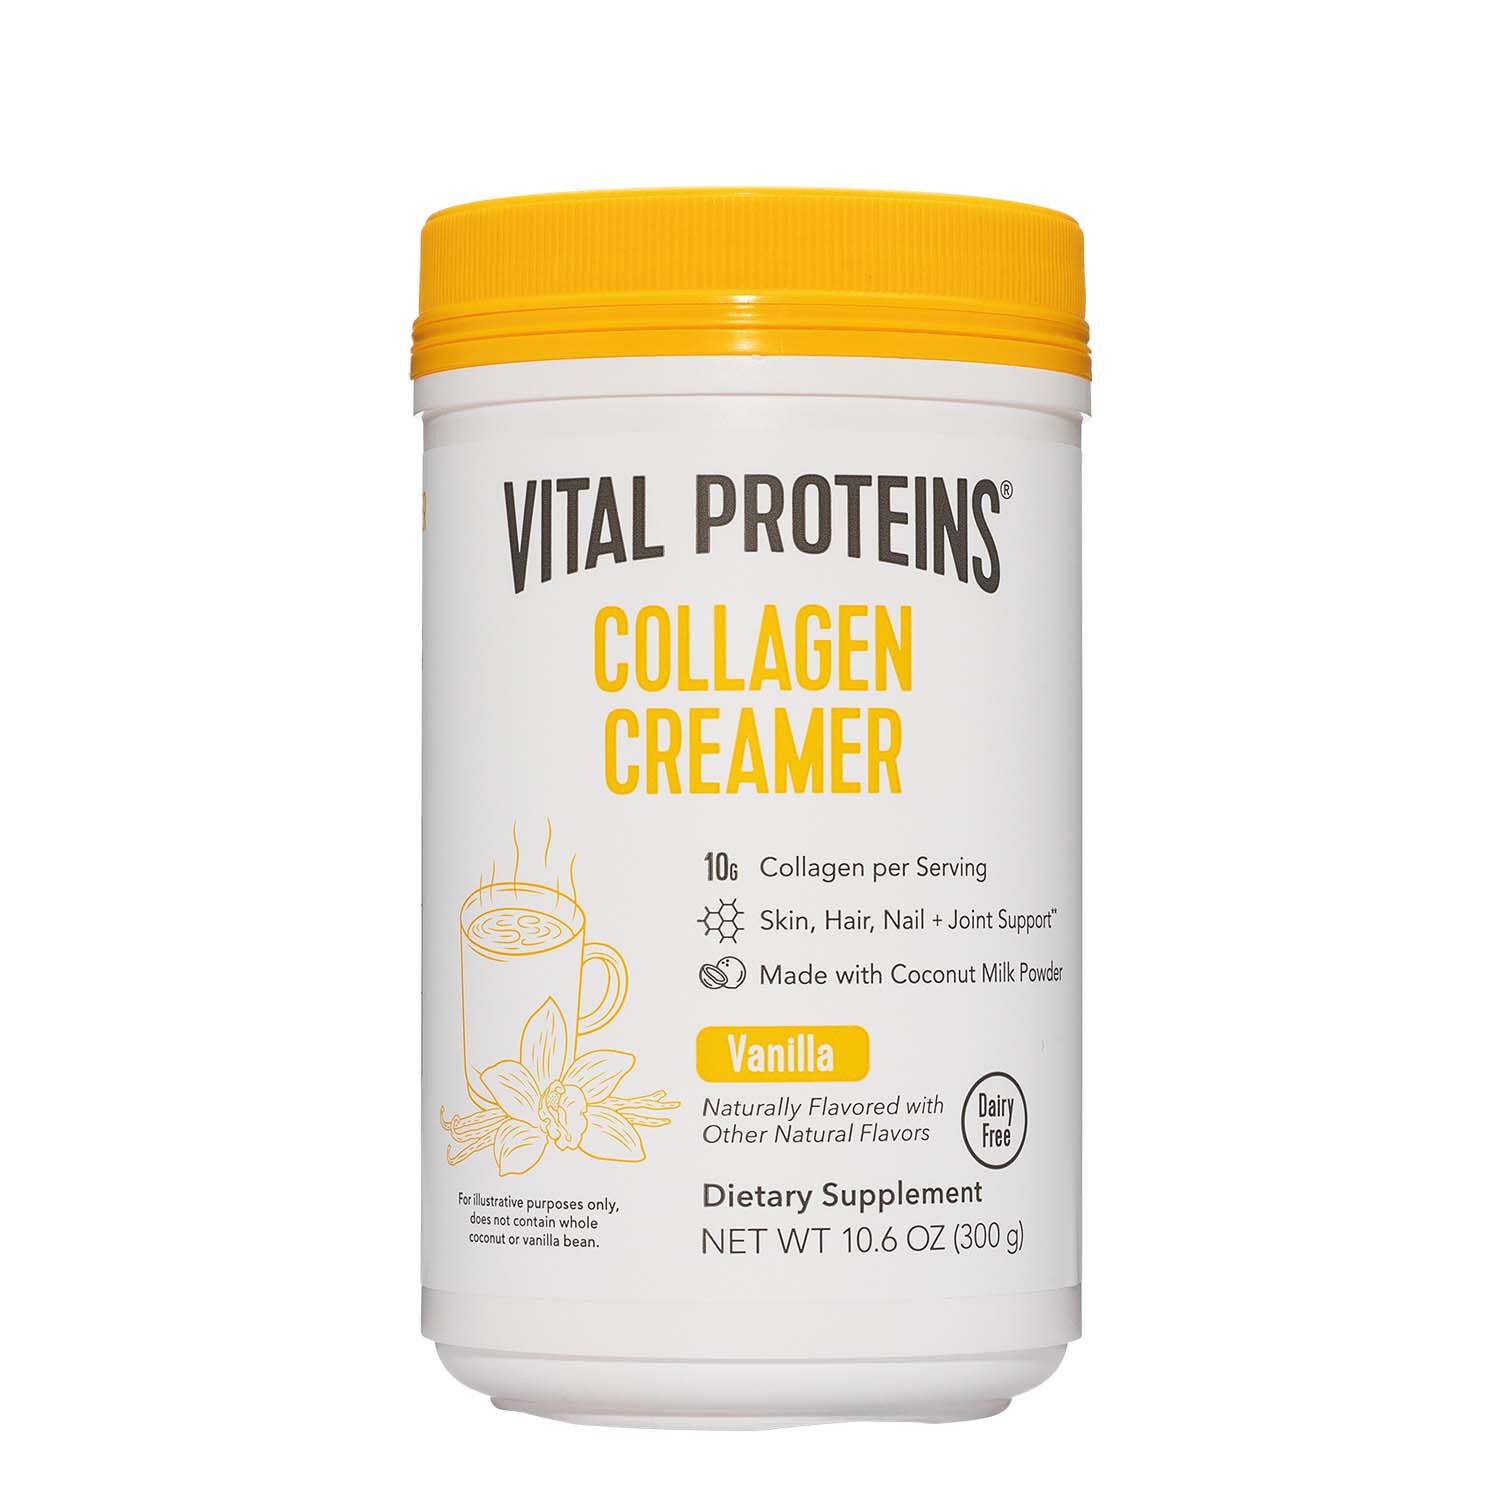 Vital Proteins Collagen Creamer in Vanilla